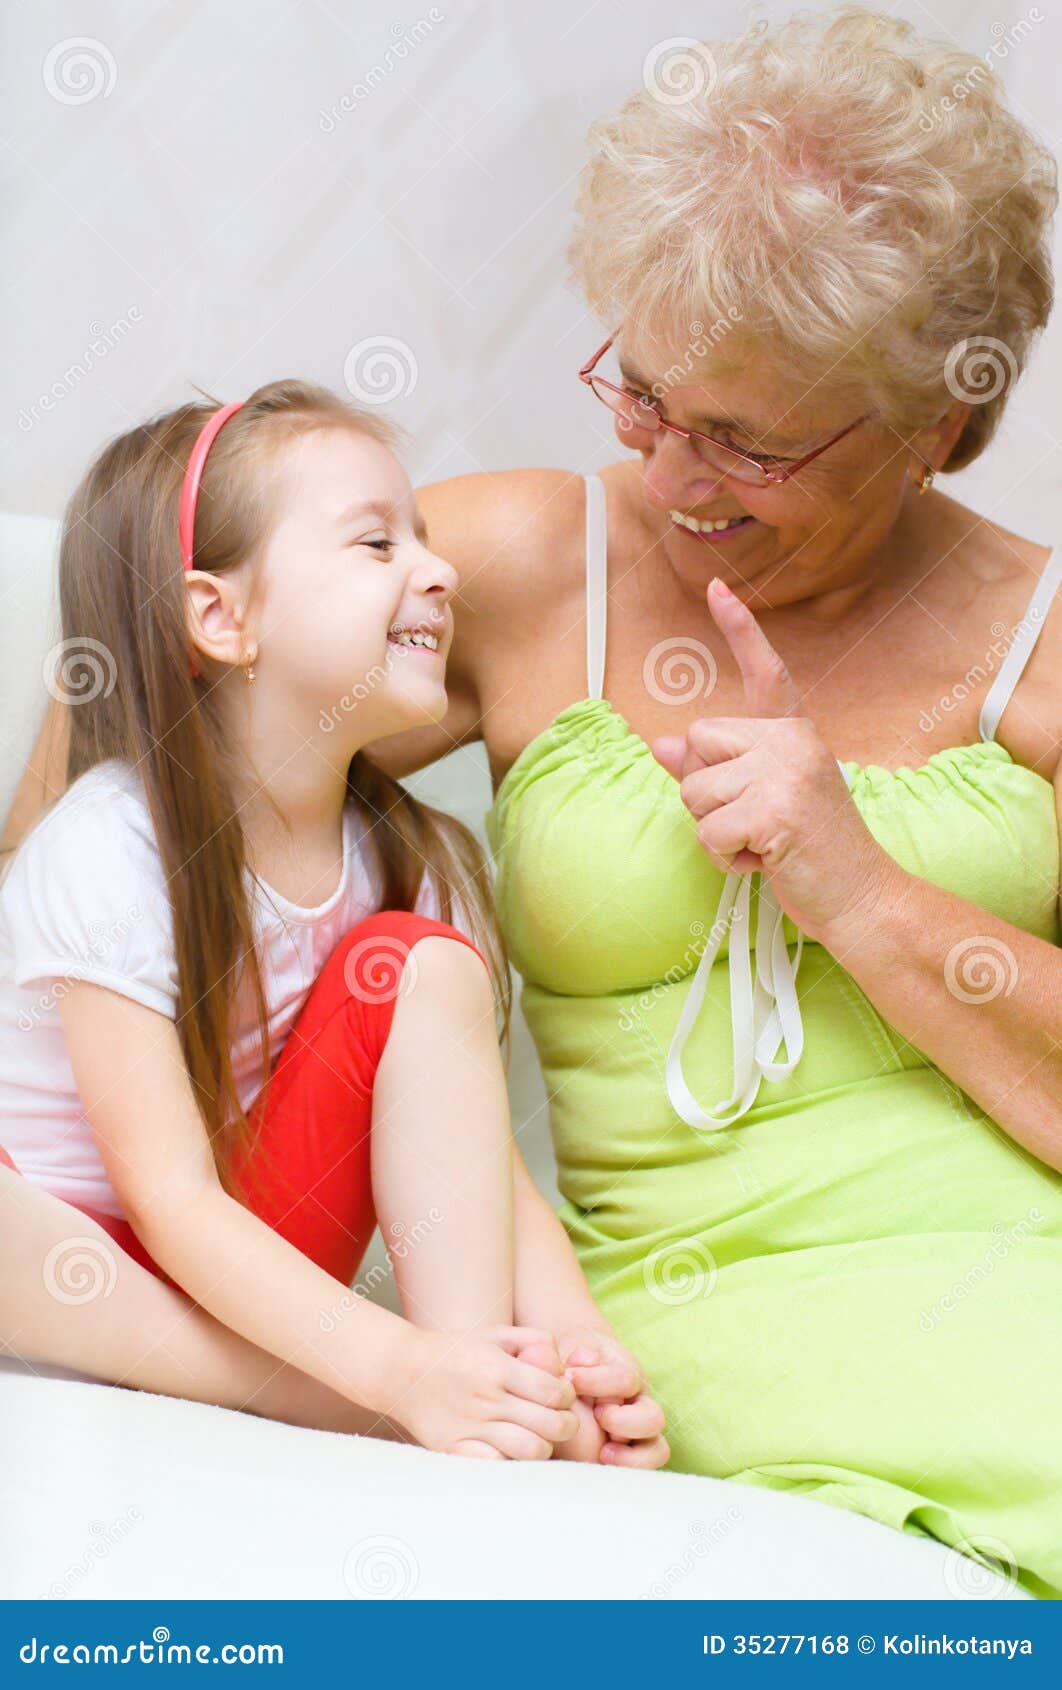 Лизать зрелой бабушке. Внучка полизала бабушке. Бабушка с внучкой Лесбиан. Бабушка говорит внучке.